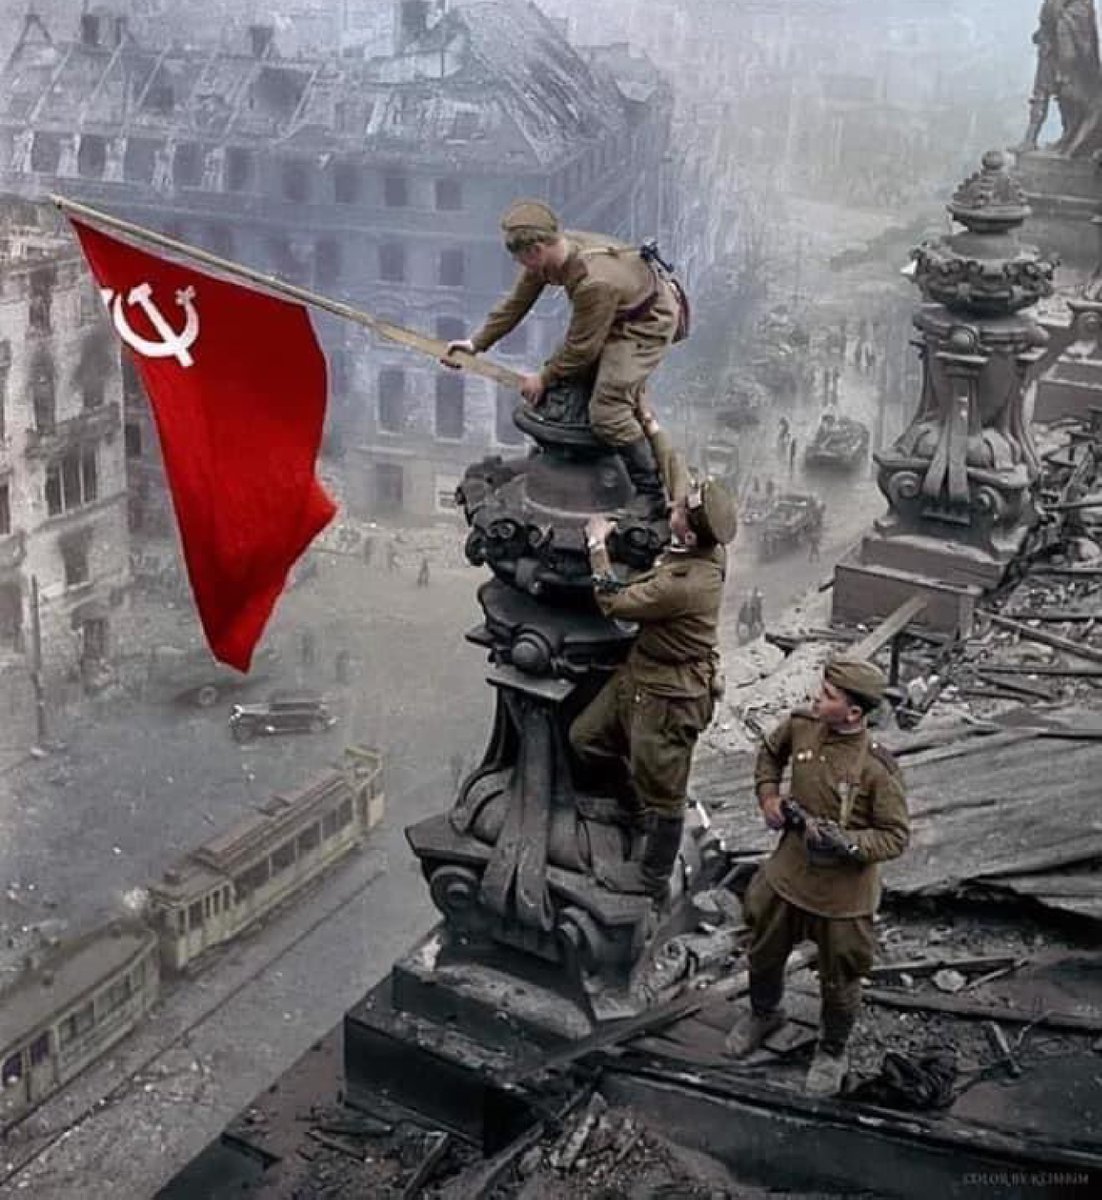 El primer vuelo tripulado al espacio fue el Vostok-1 con Yuri Gagarin
Intentan reescribir la historia, quizás veamos algún día que Patton entró en Berlín el 2 de Mayo de 1945 y desplegó su bandera en el Reichstag. 

Lástima, la bandera fue la roja y costó 27 millones de vidas.